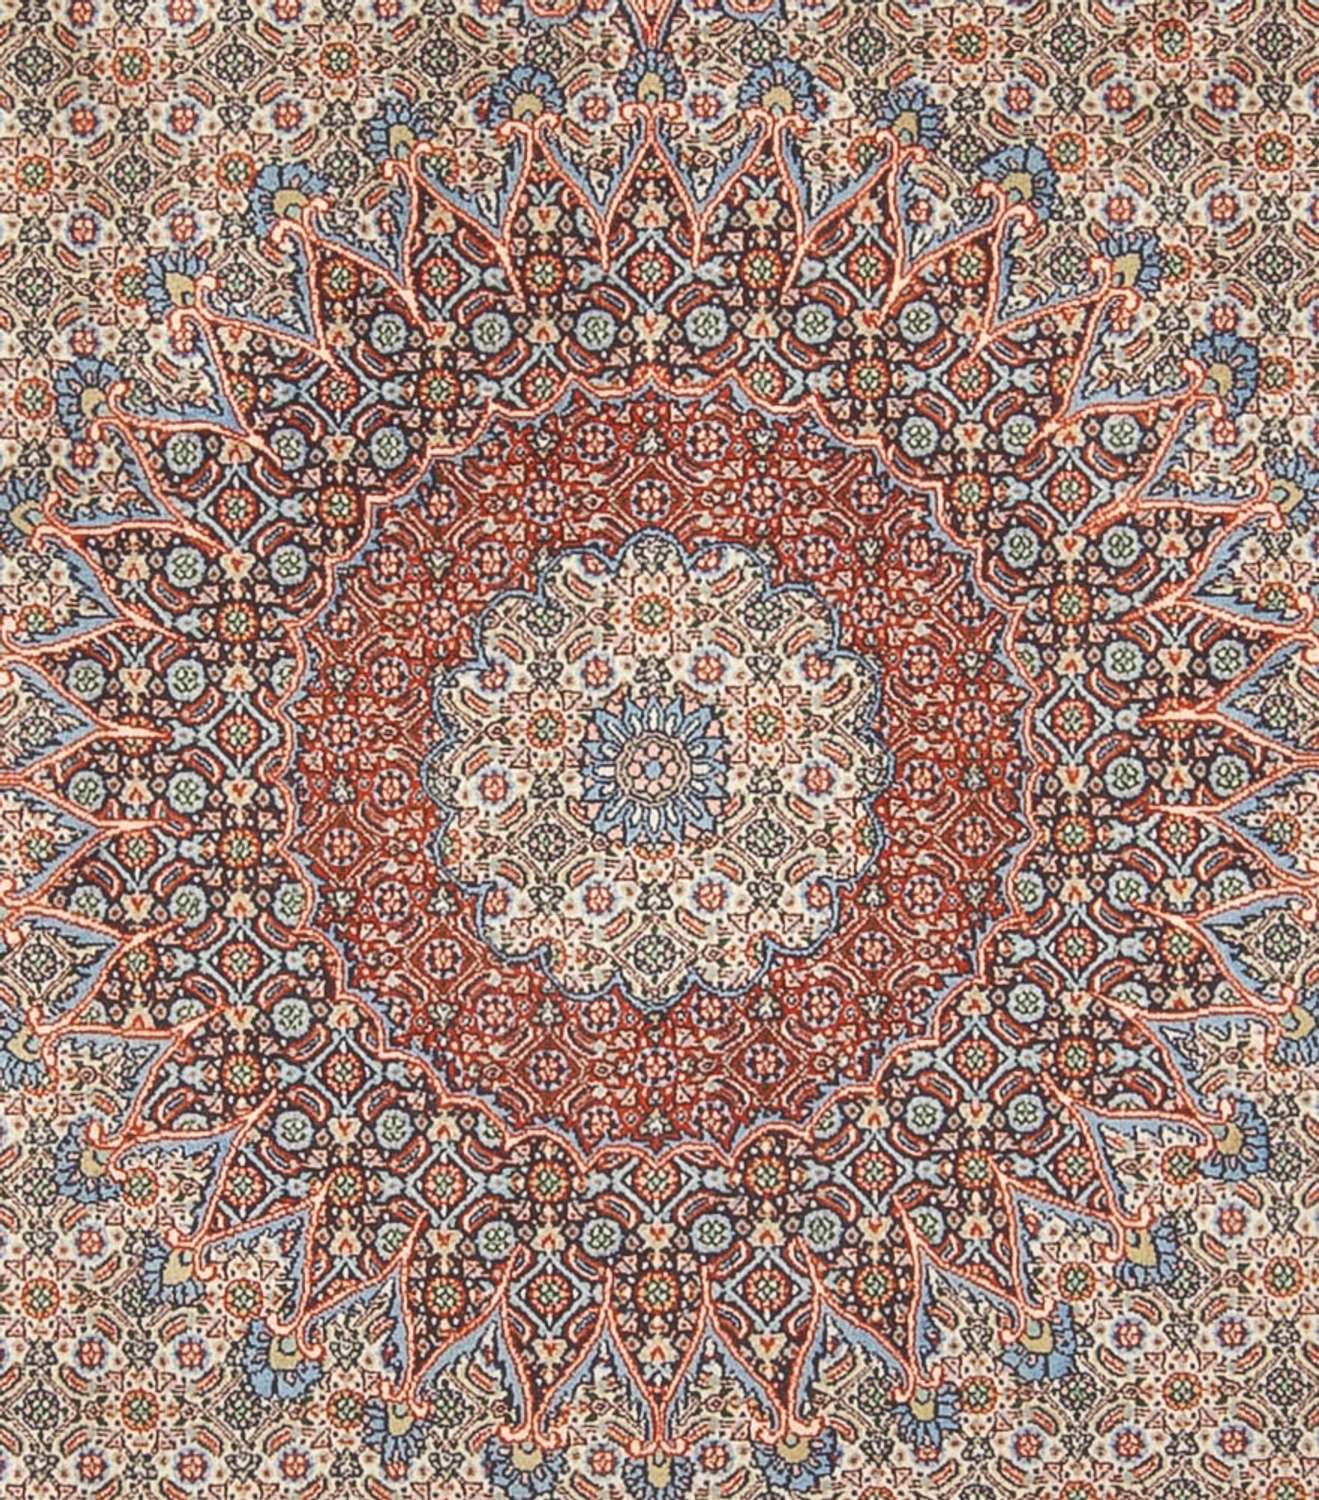 Tapete Persa - Clássico - 345 x 243 cm - castanho claro